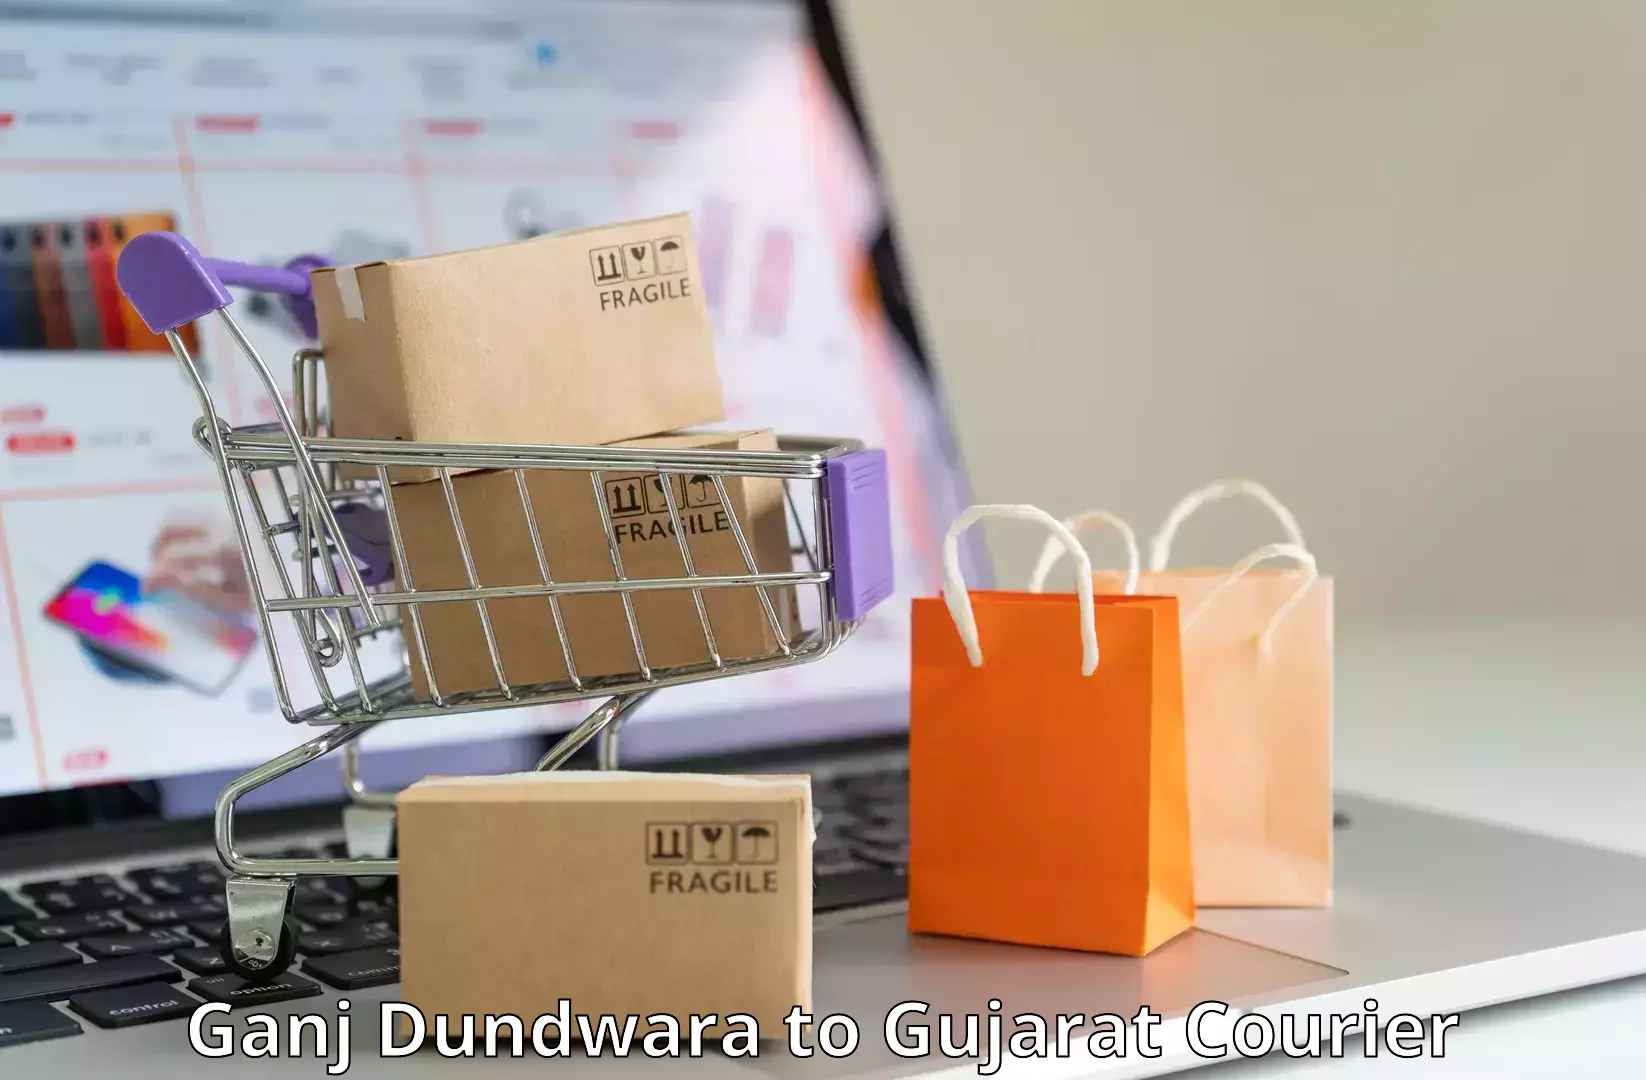 Courier services Ganj Dundwara to Dahej